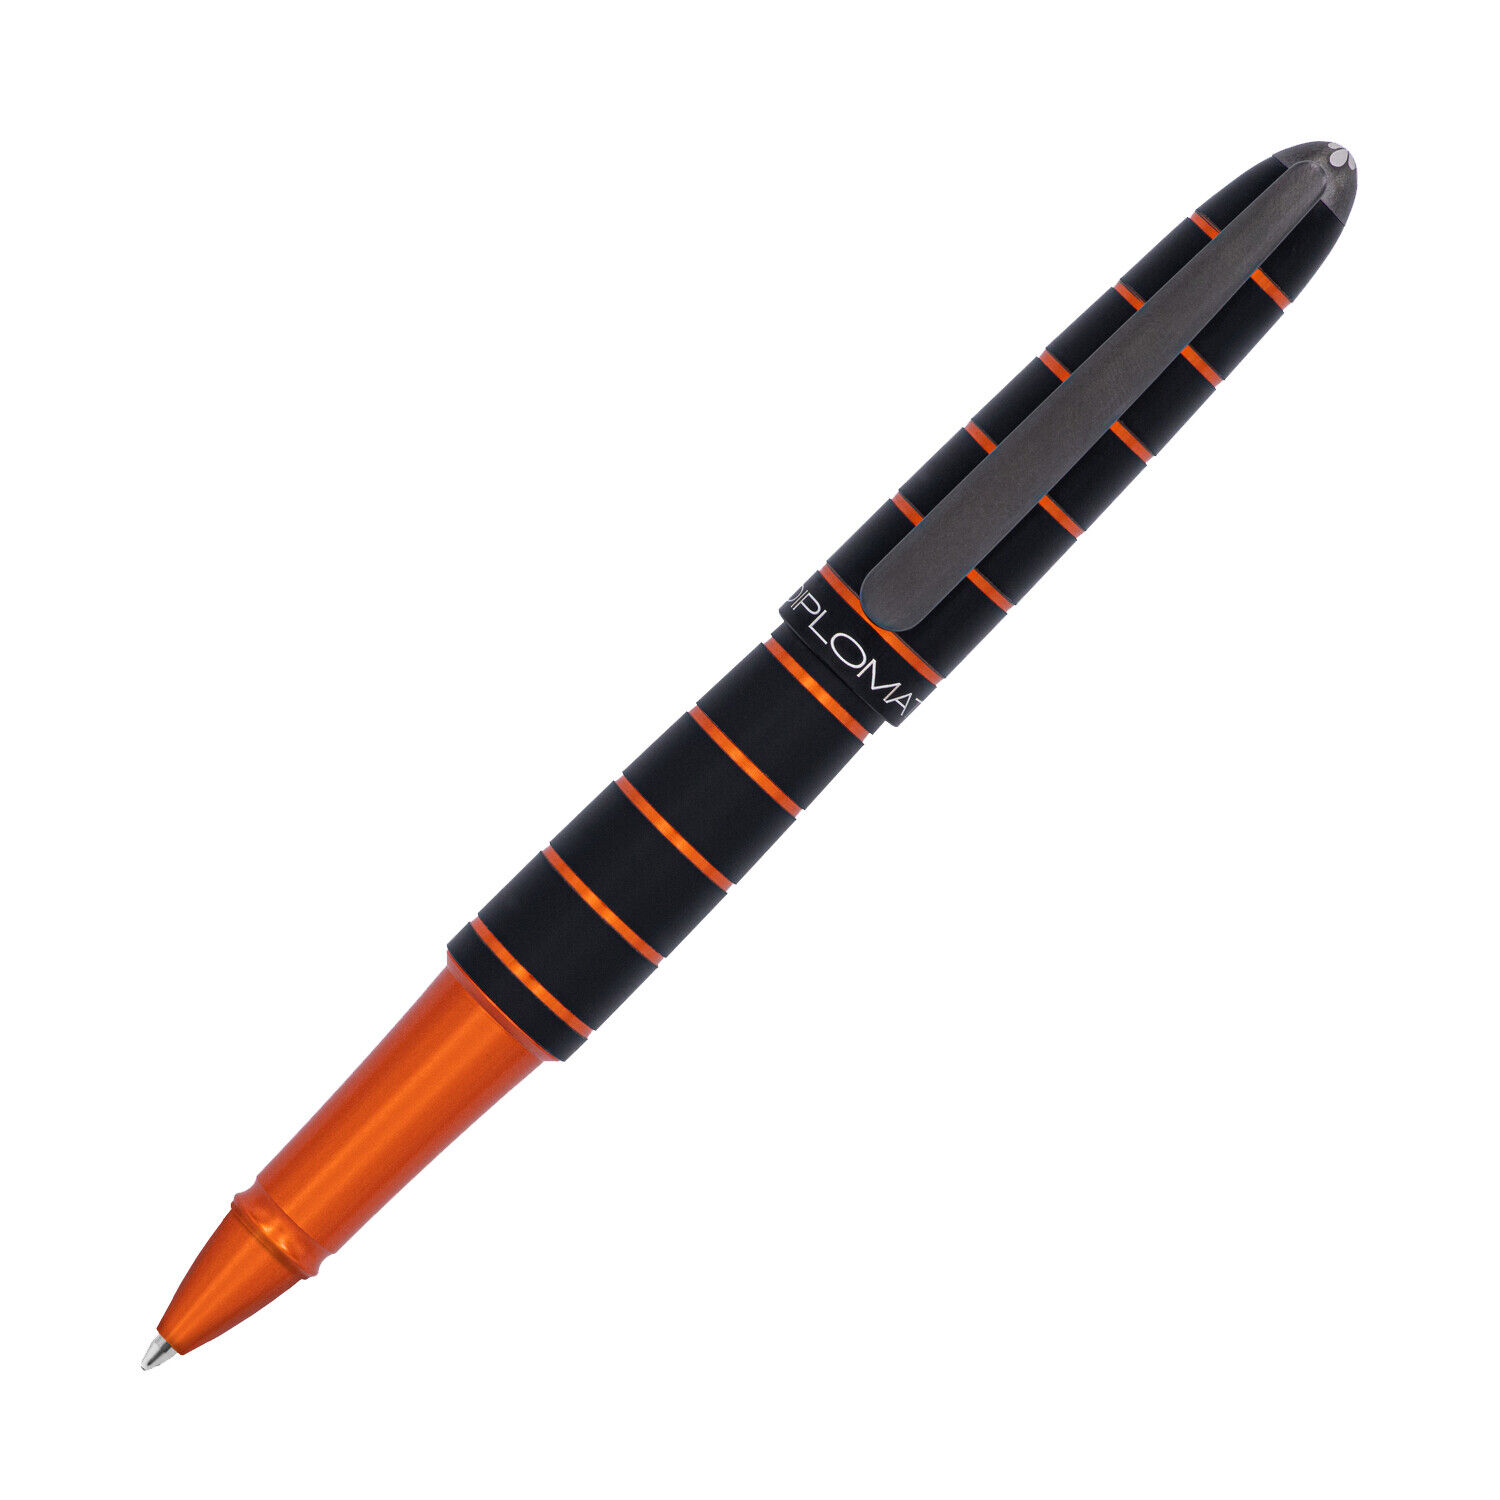 Diplomat Elox Rollerball Pen in Ring Black/Orange - NEW in Original Box